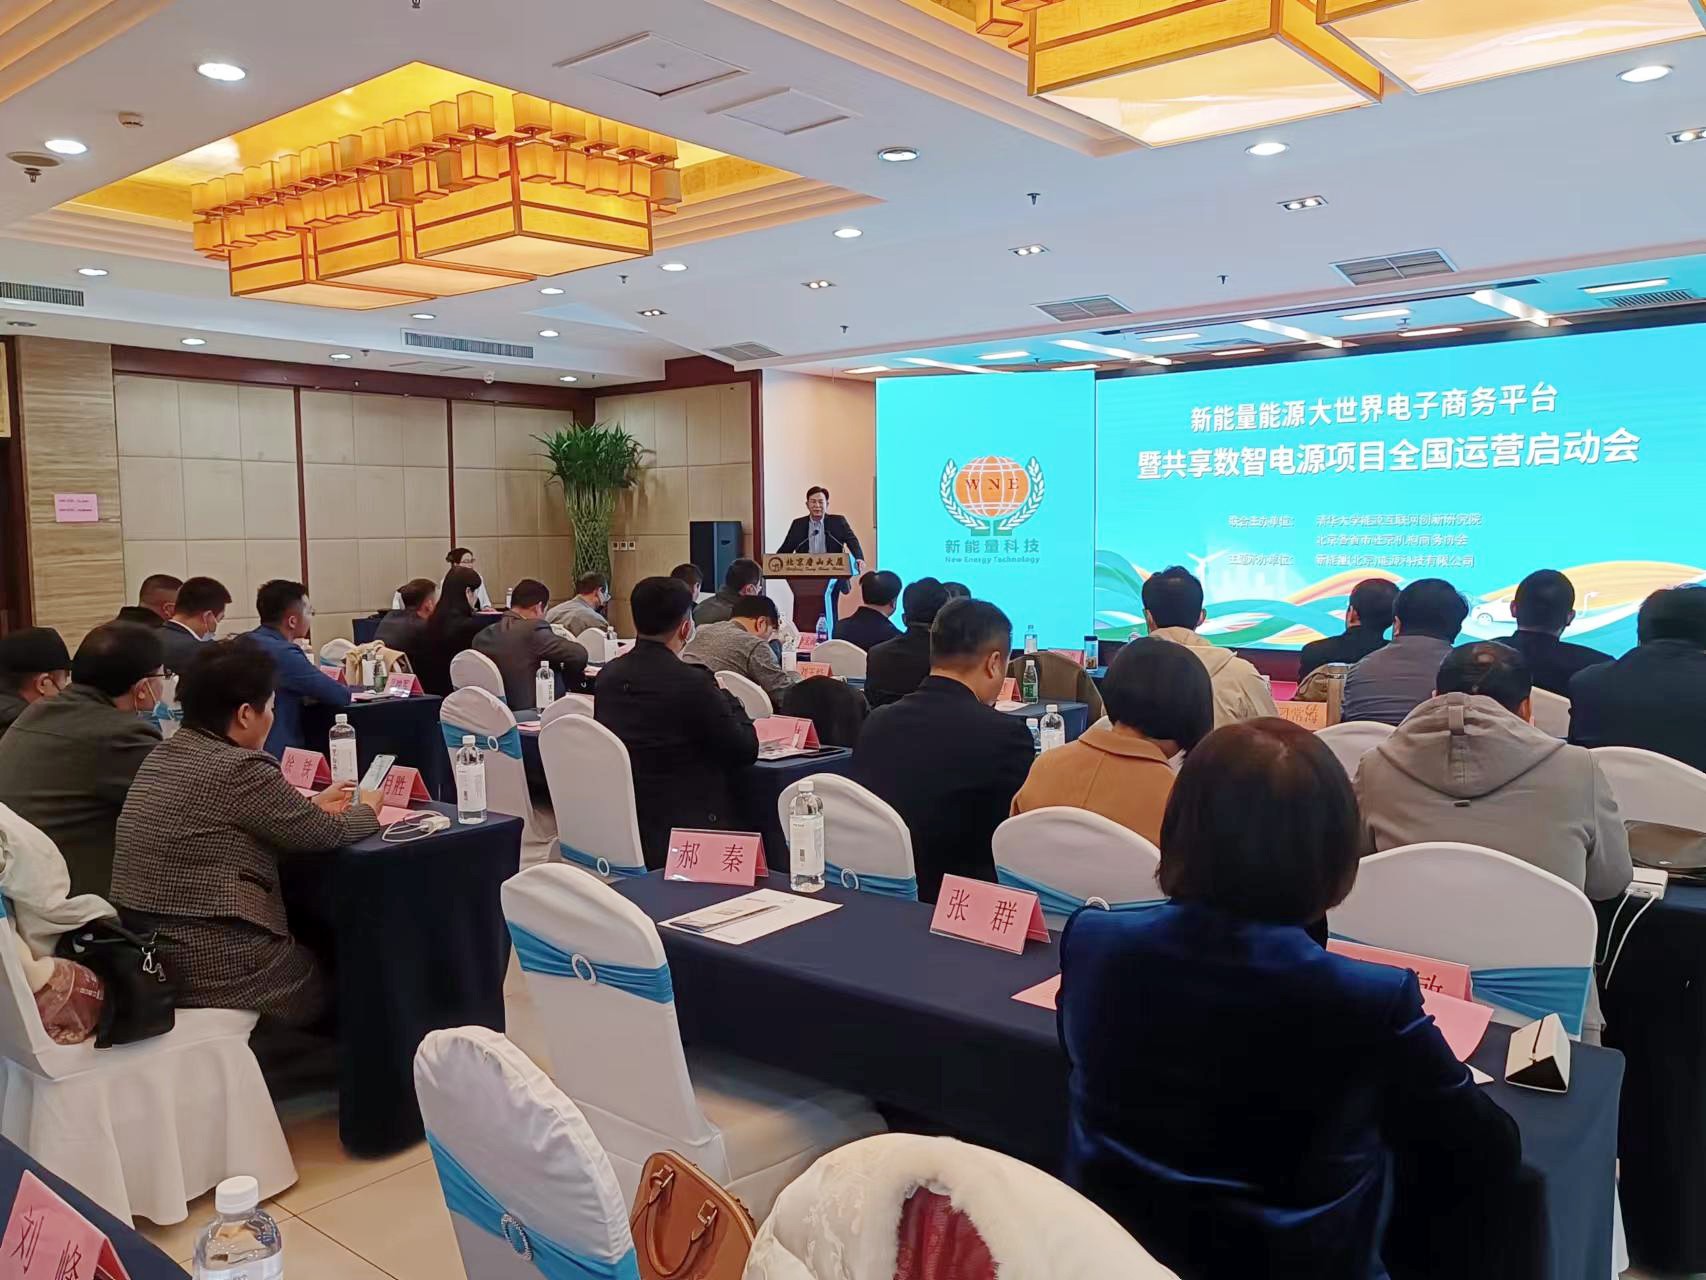 共享数智电源项目全国启动仪式在京举行